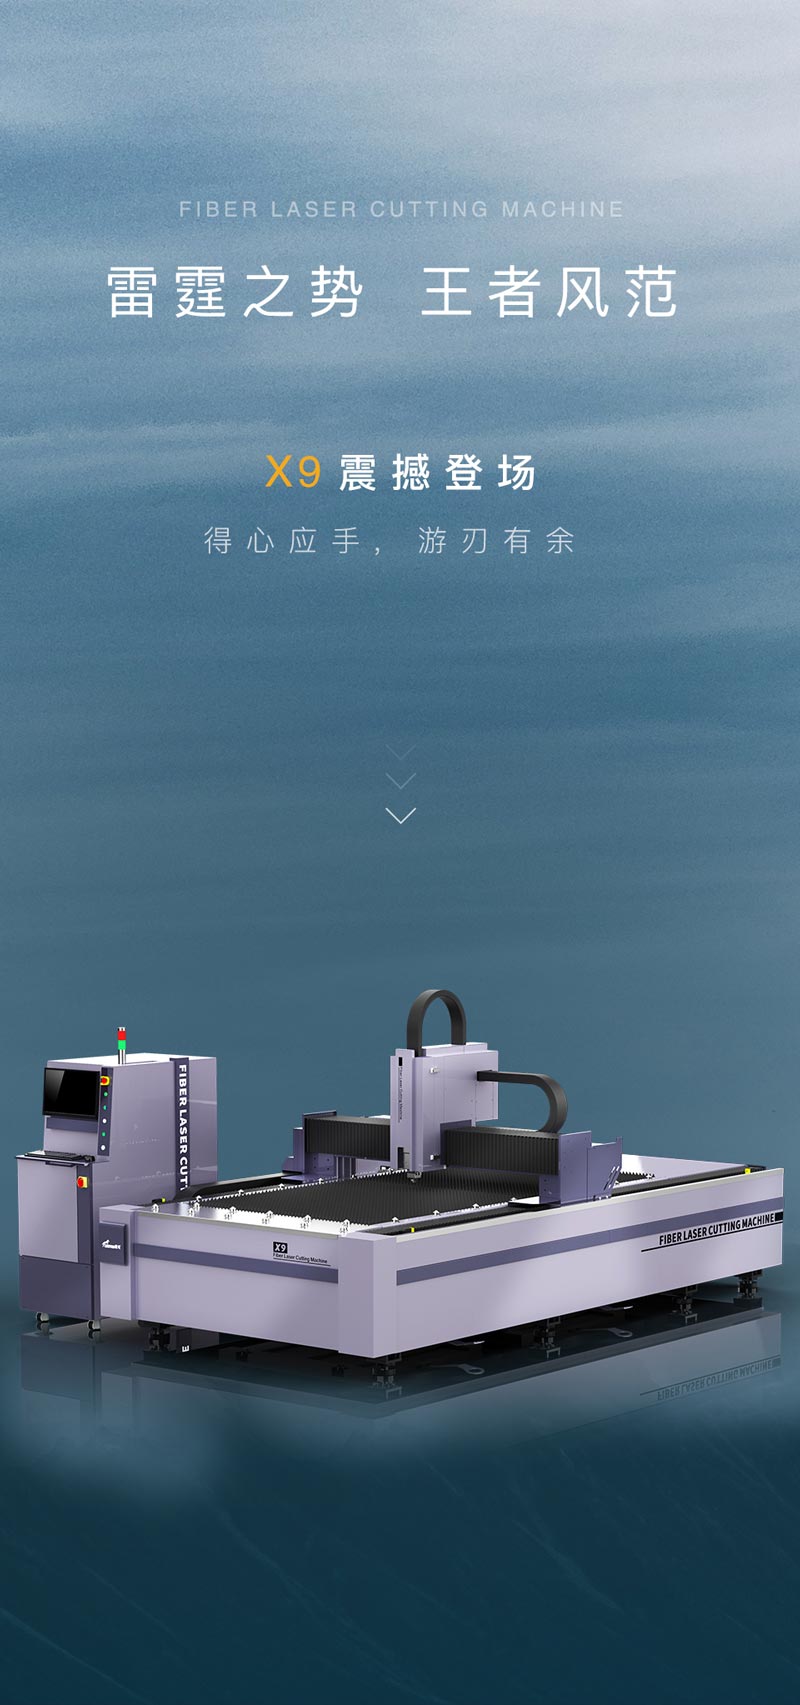 得马-X9工业光纤激光切割机产品展示